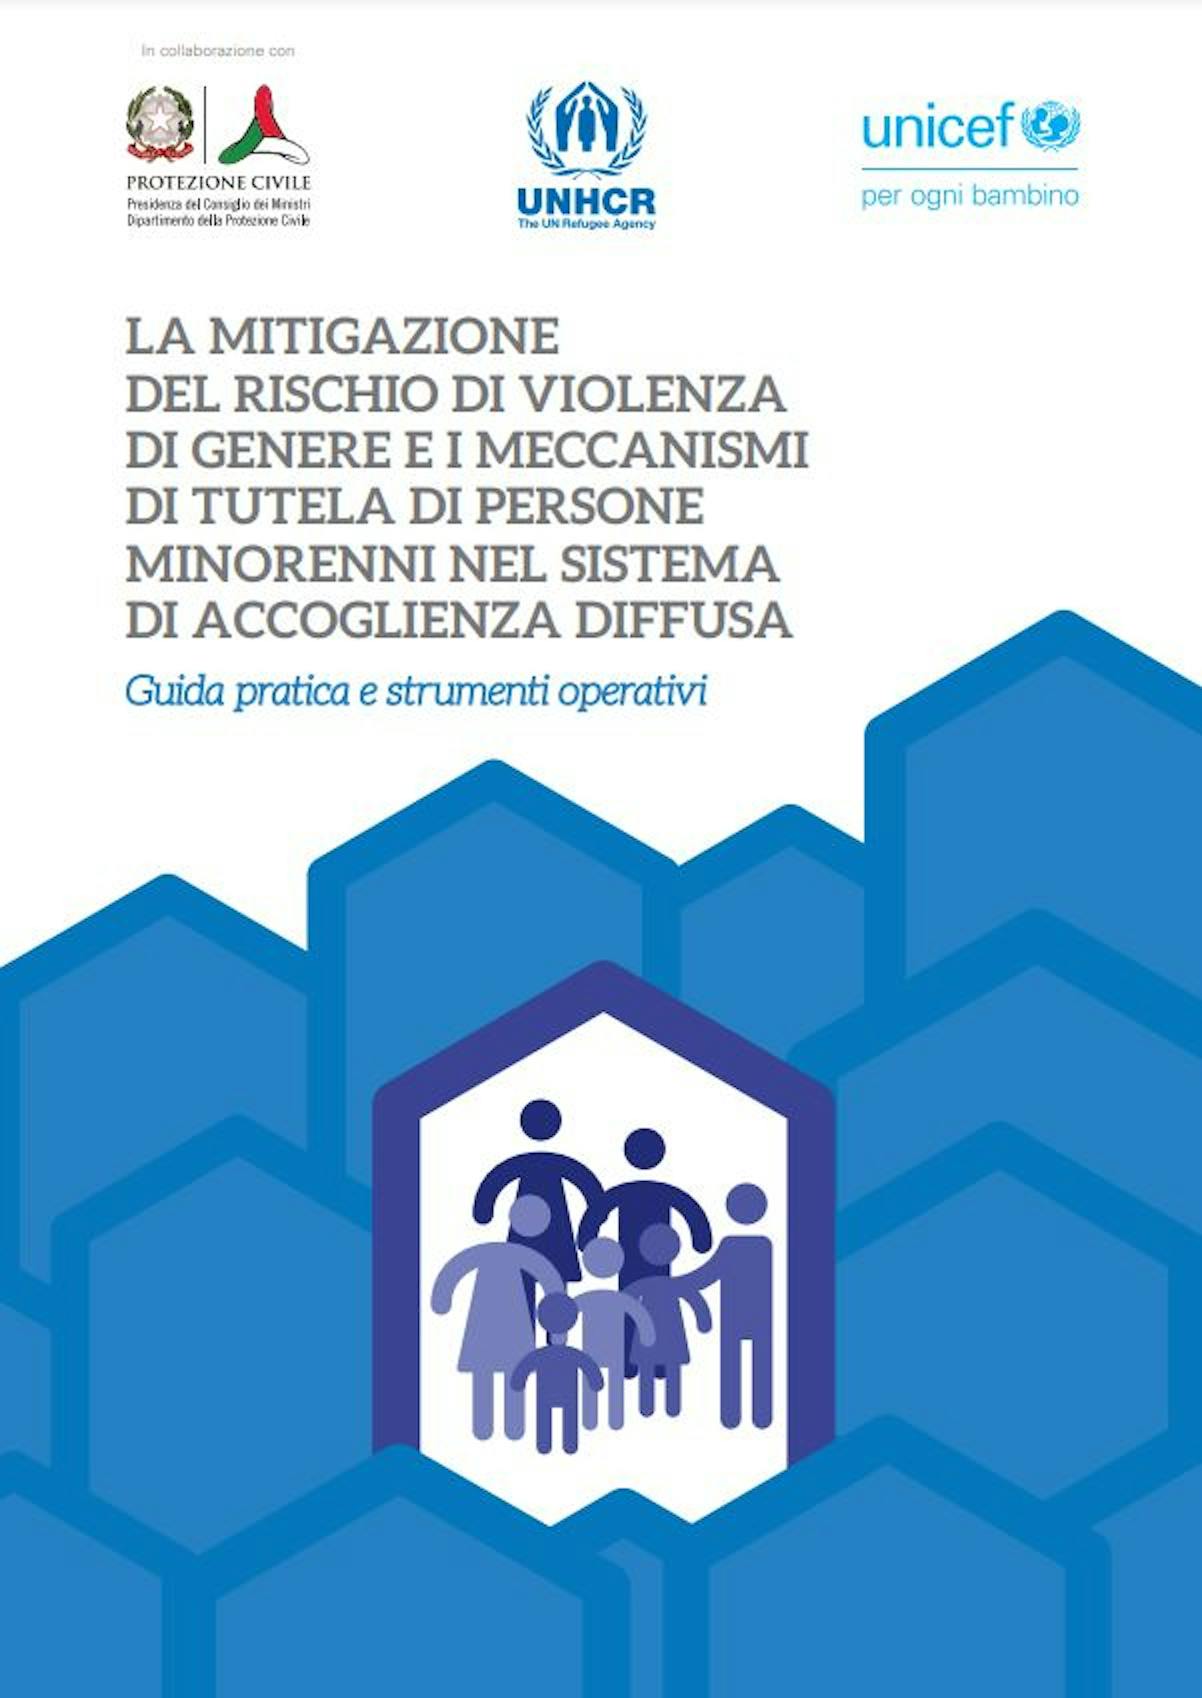 La mitigazione del rischio di violenza di genere e i meccanismi di tutela di persone minorenni nel sistema di accoglienza diffusa